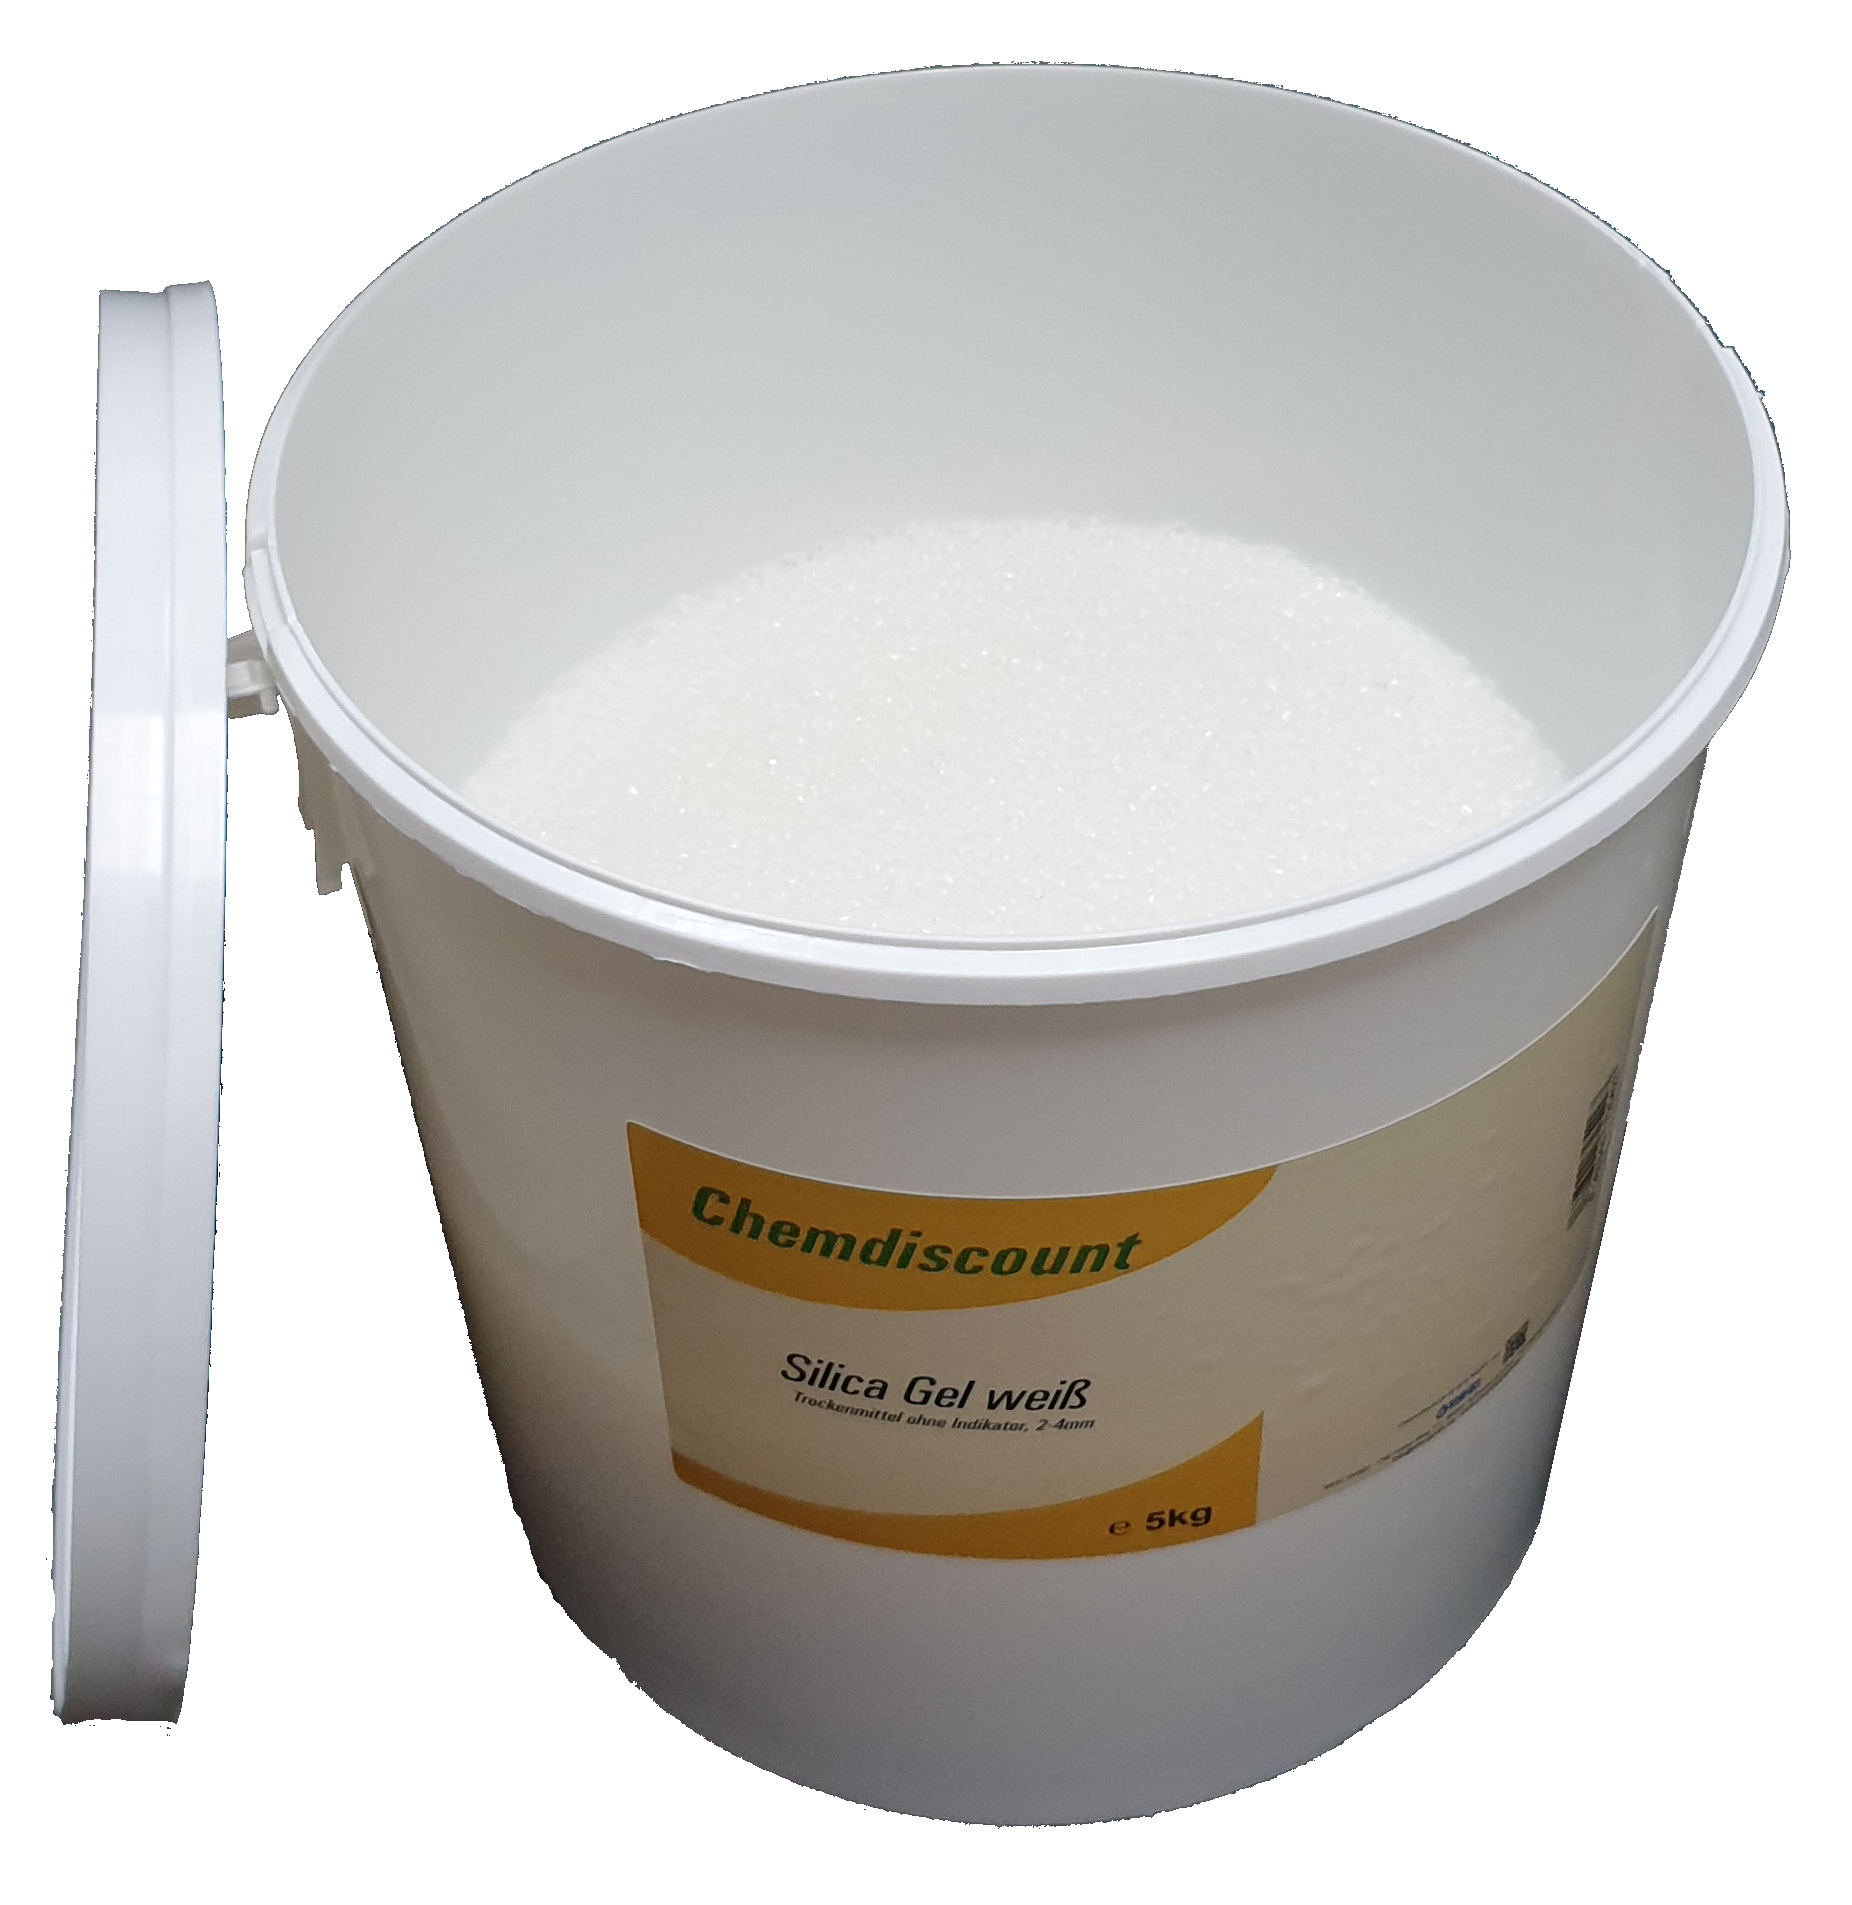 1,2,4 kg Silica Gel Weiß regenerierbar, Trockenmittel ohne Indikator,  Silikagel kaufen bei